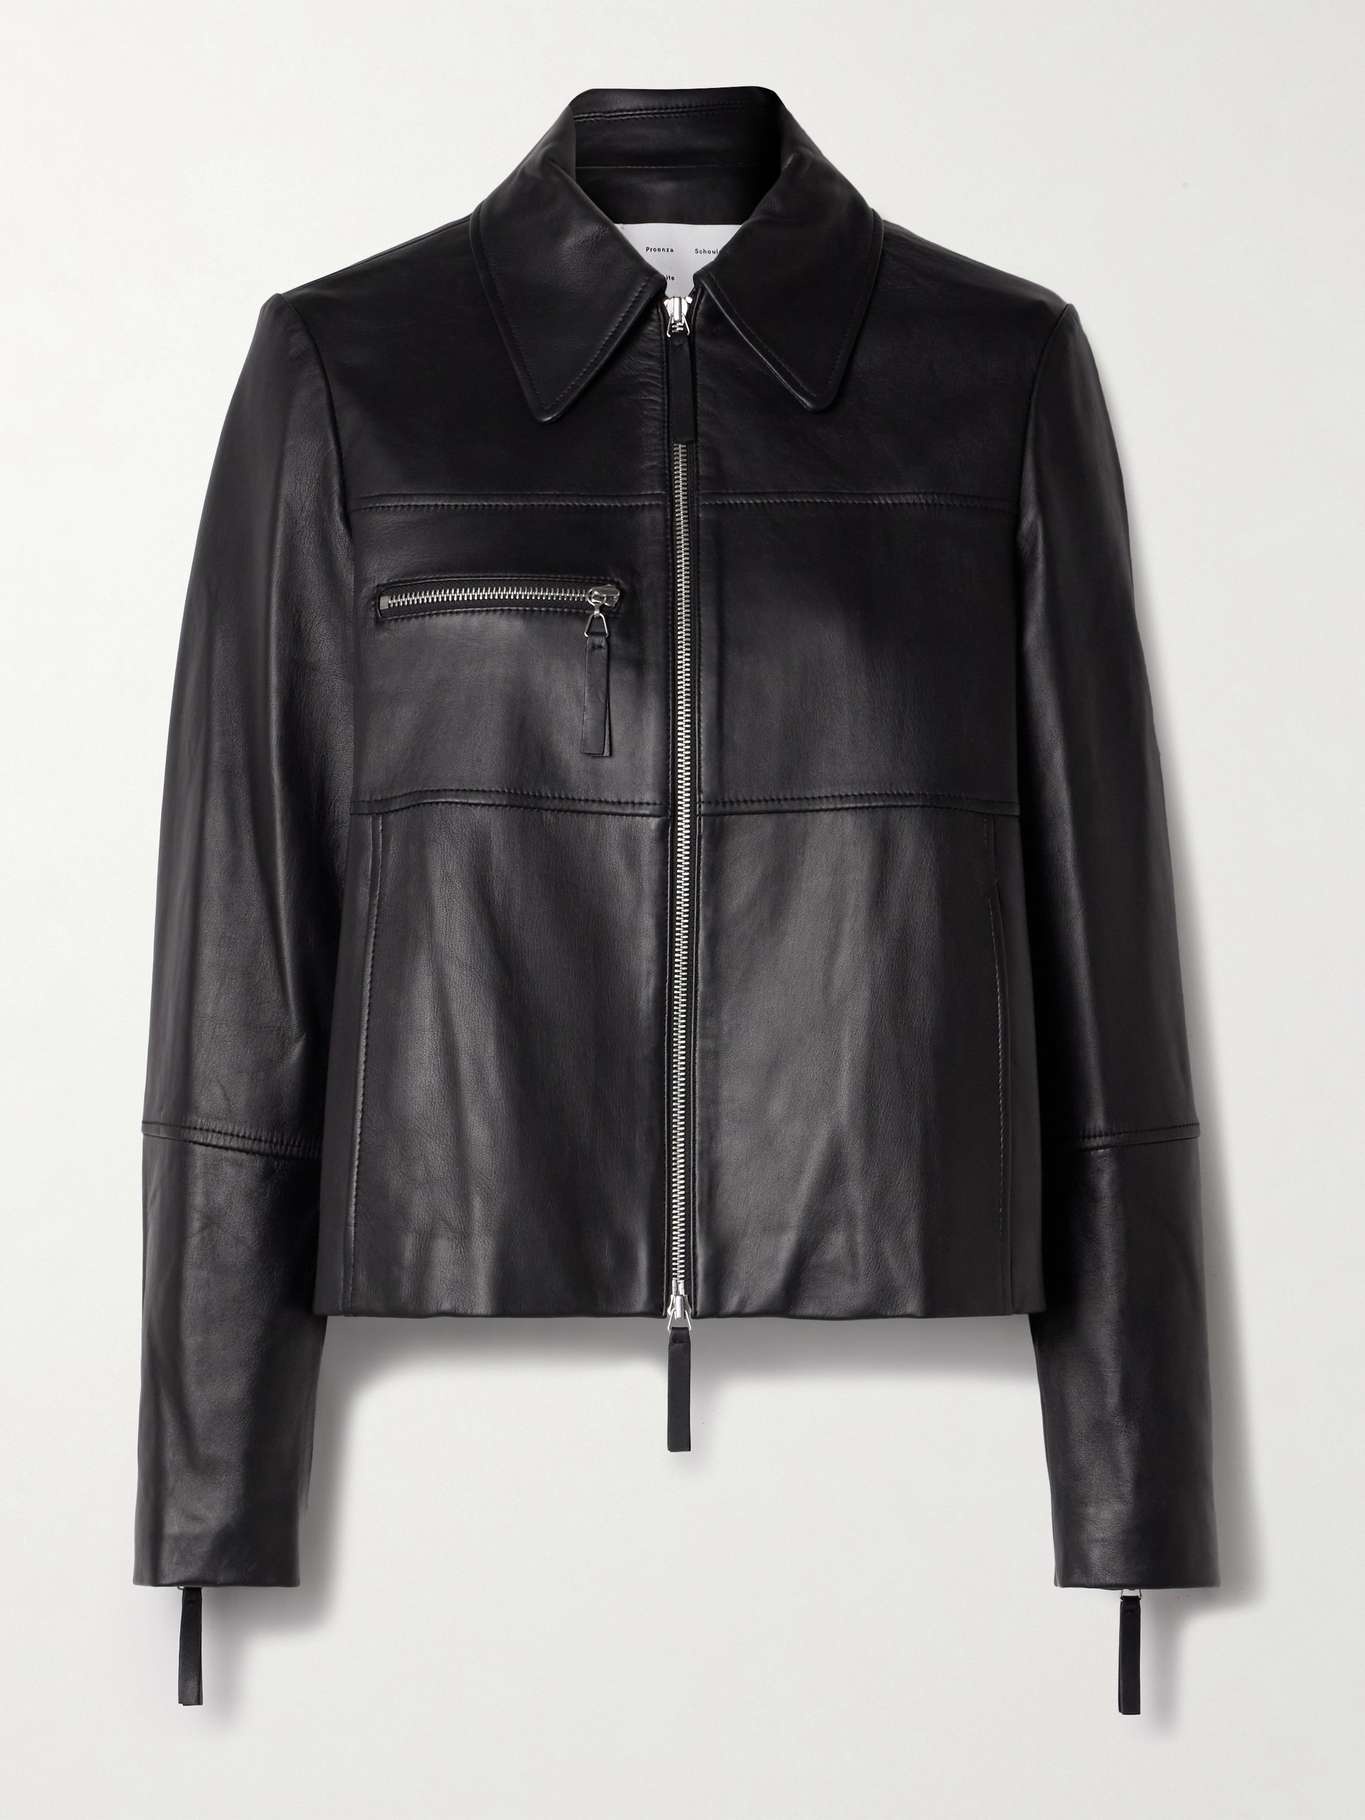 Annabel paneled leather jacket - 1